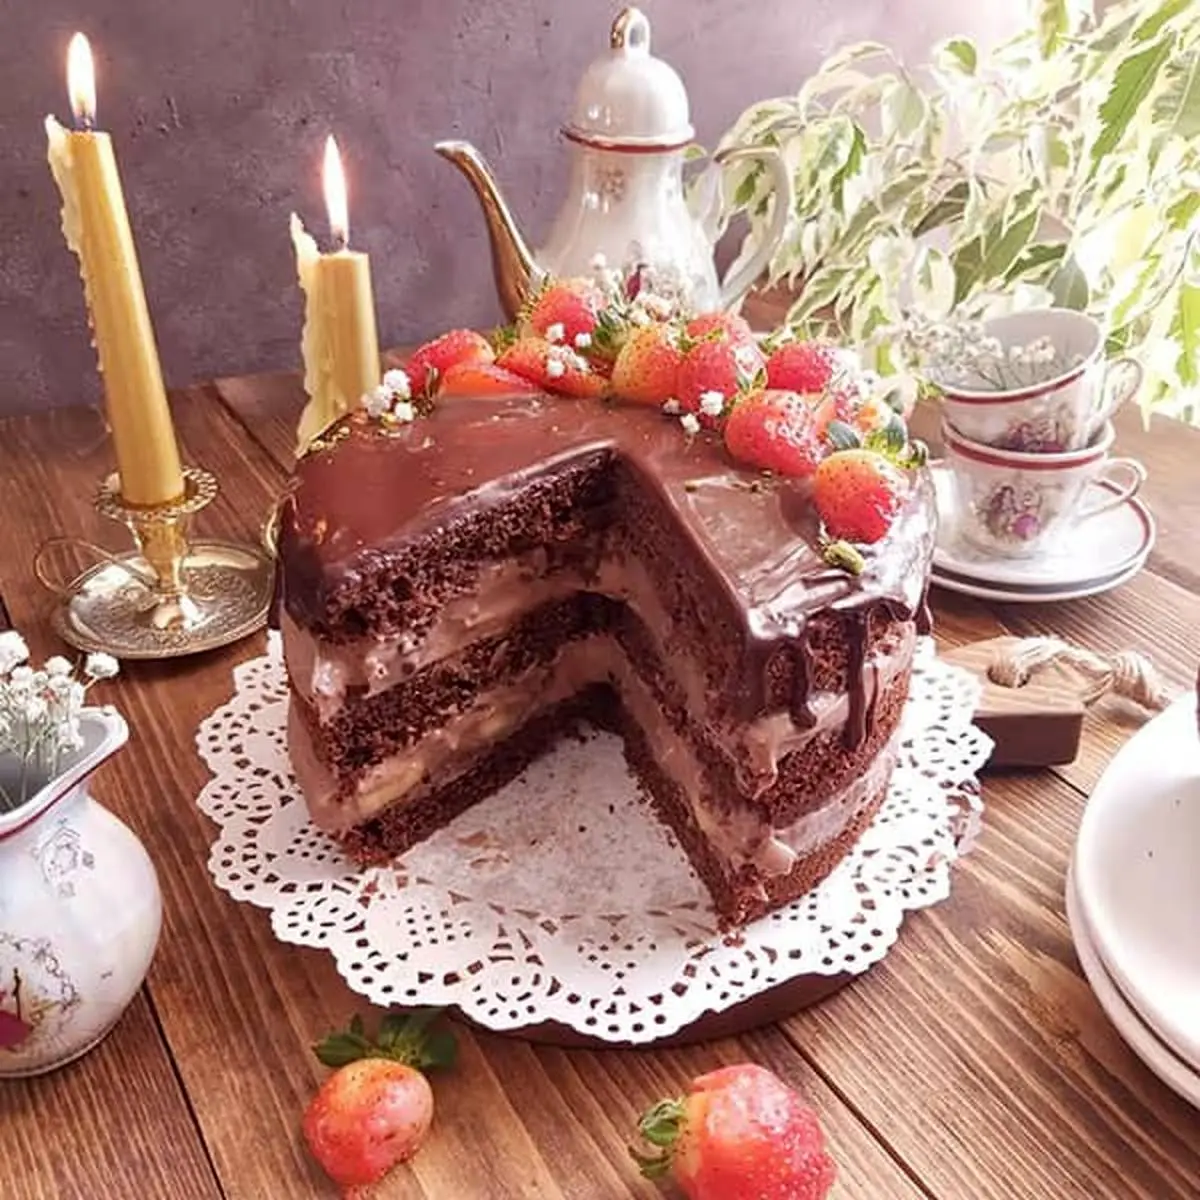 این کیک خوشمزه رو برای روز مادر آماده کن | طرز تهیه کیک شکلاتی خوشمزه + فیلم 